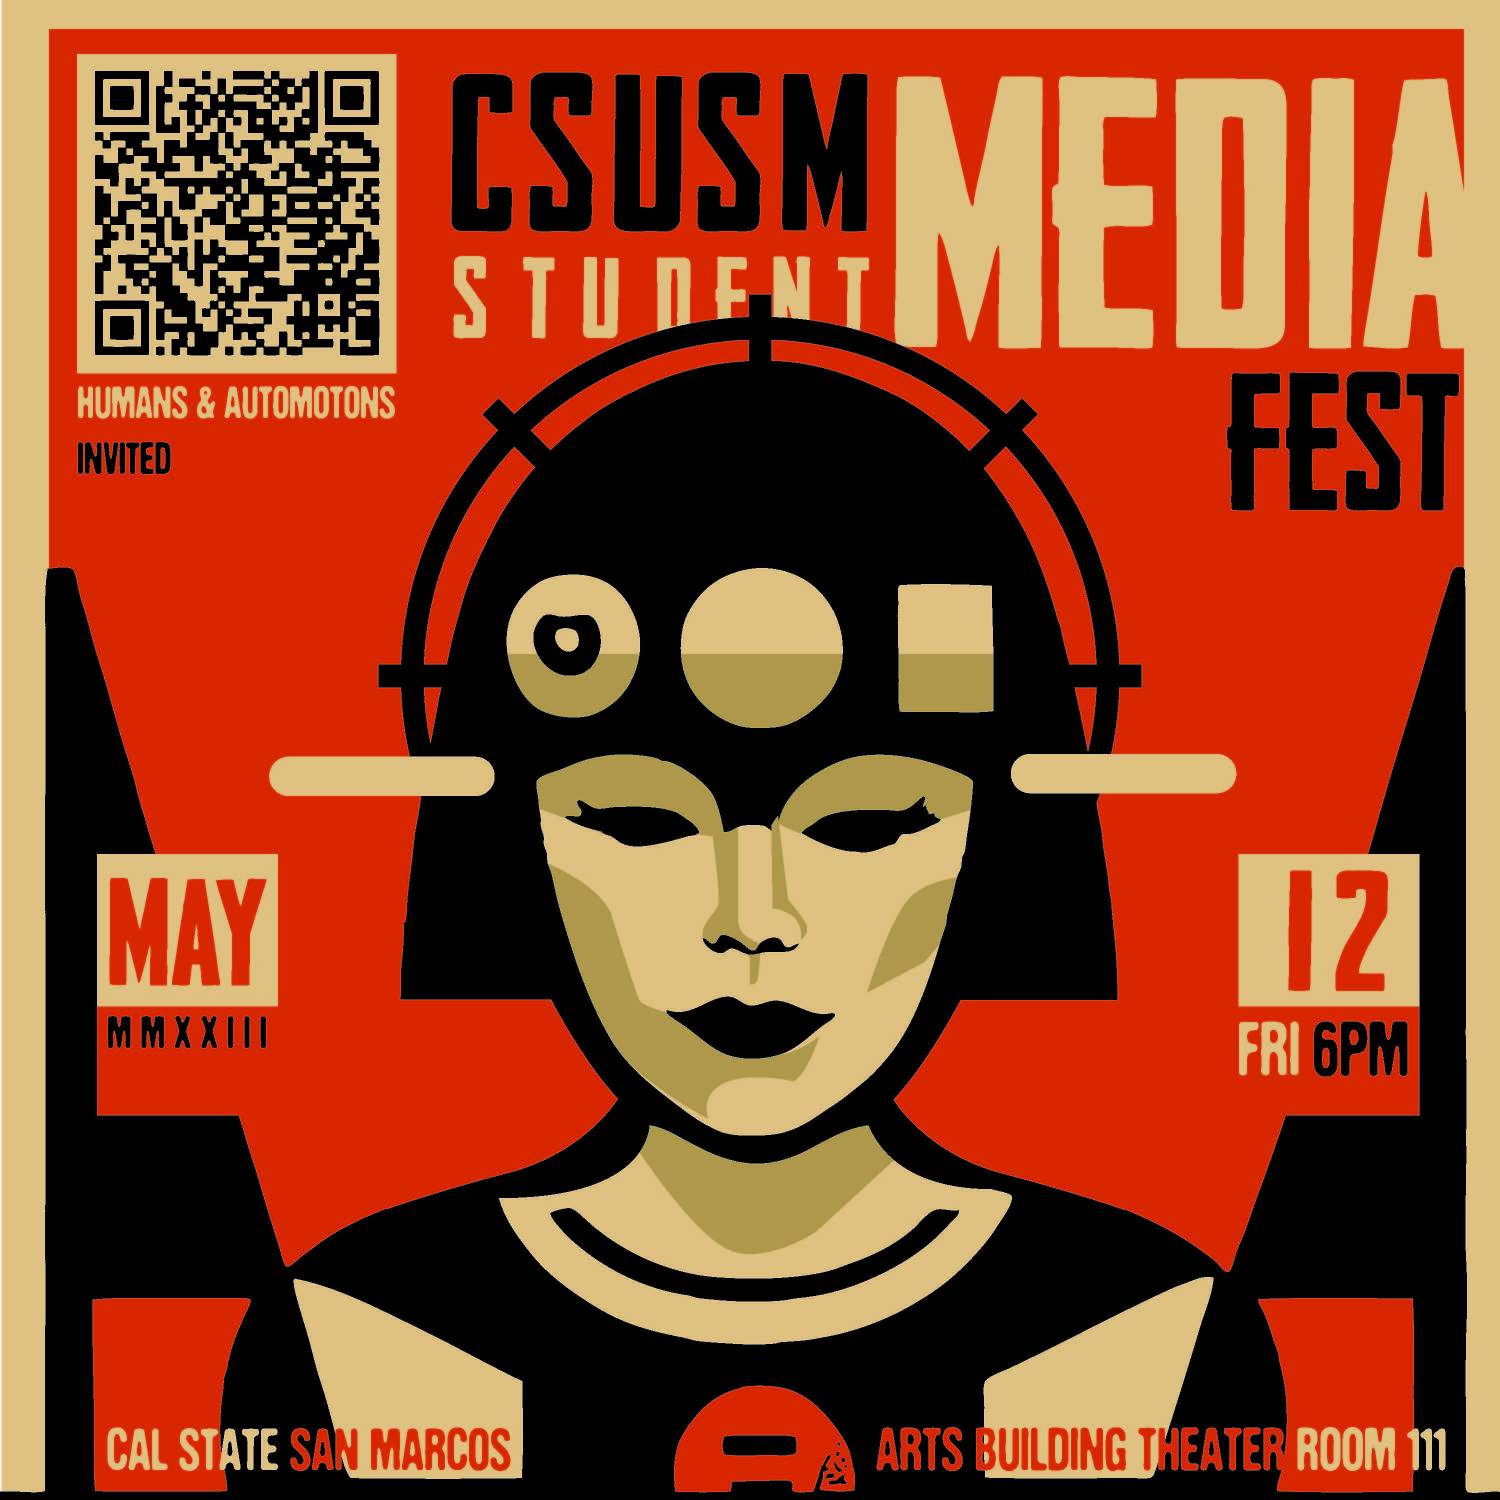 CSUSM Student Media Fest